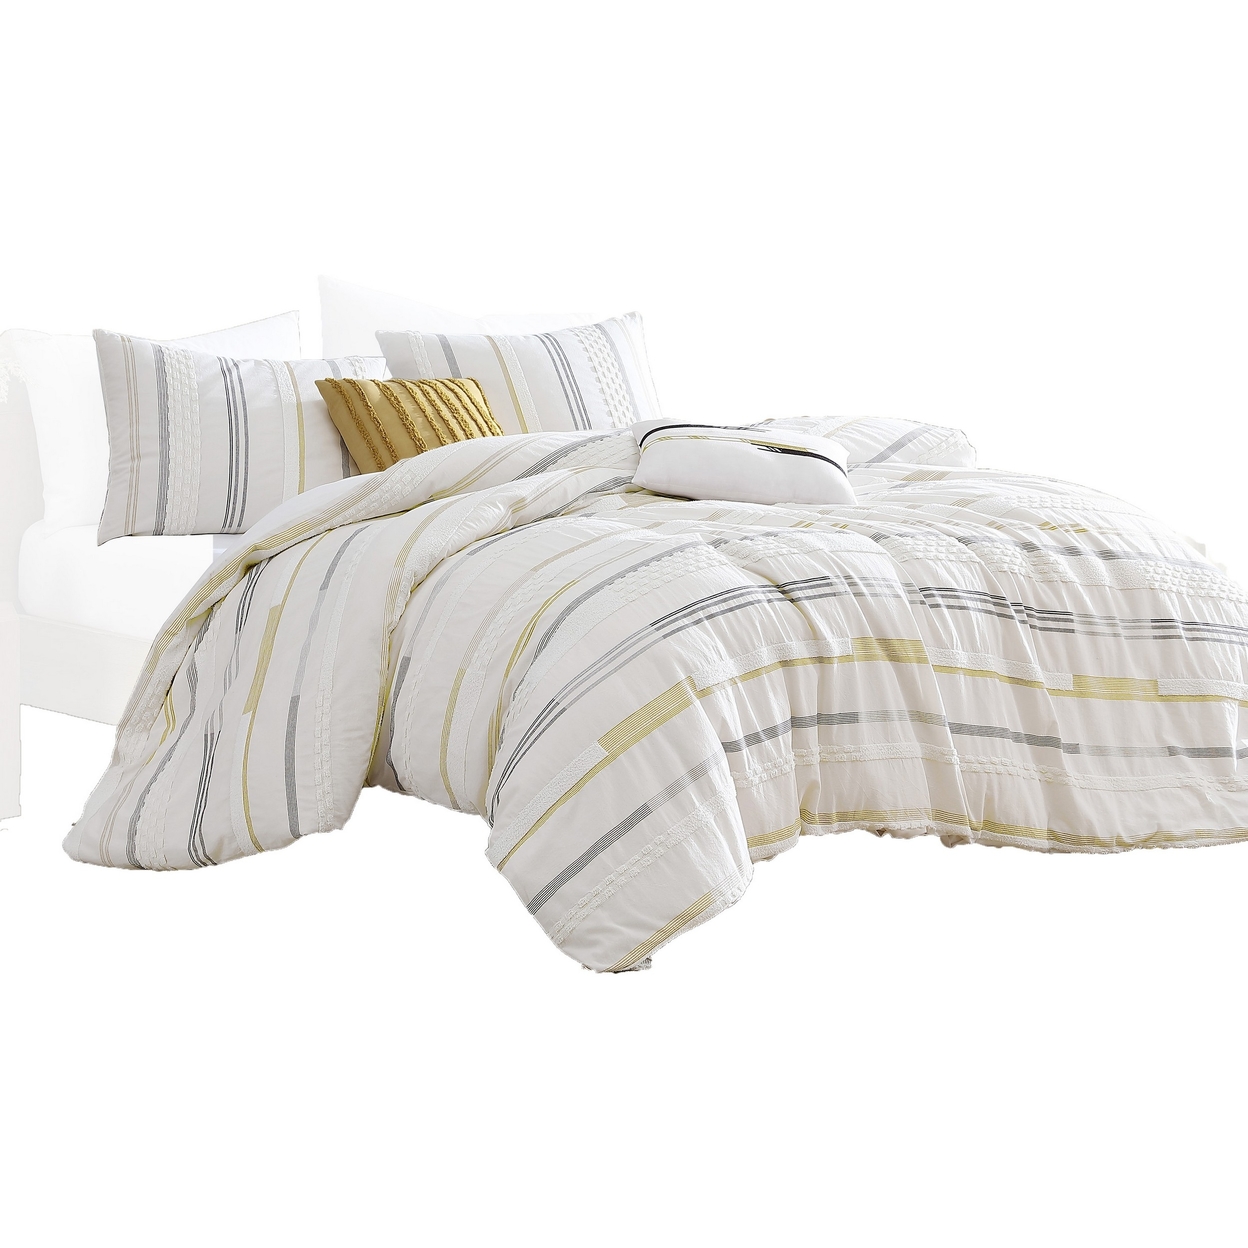 Mary 6 Piece Queen Duvet Comforter Set, 2 Pillows, Textured Ivory Boucle - Saltoro Sherpi